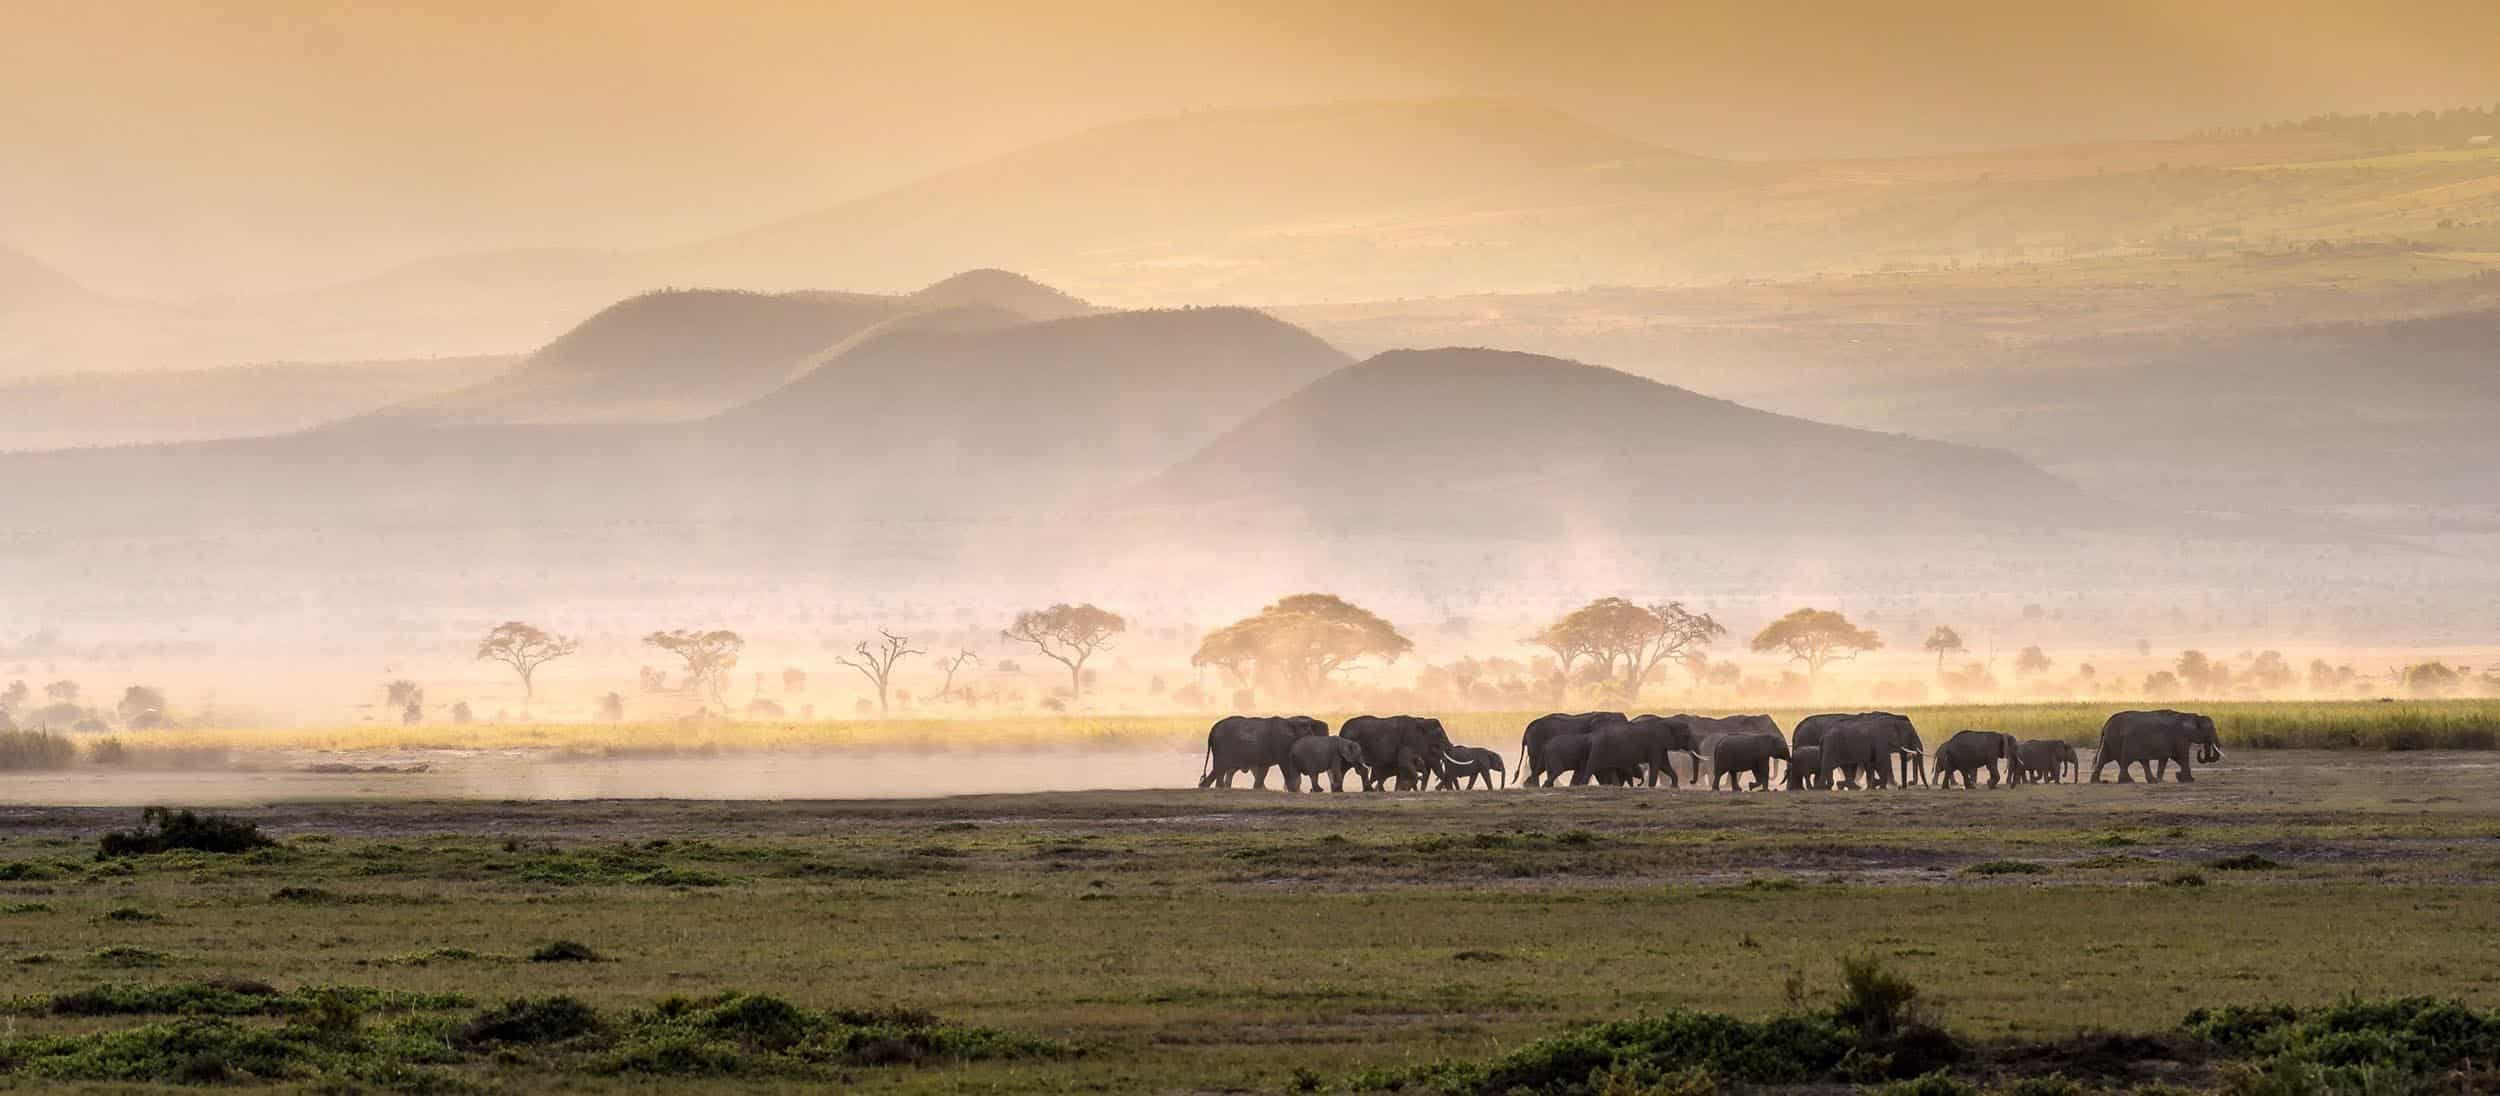 Safarireizen in Tanzania met eenvoudig reizen